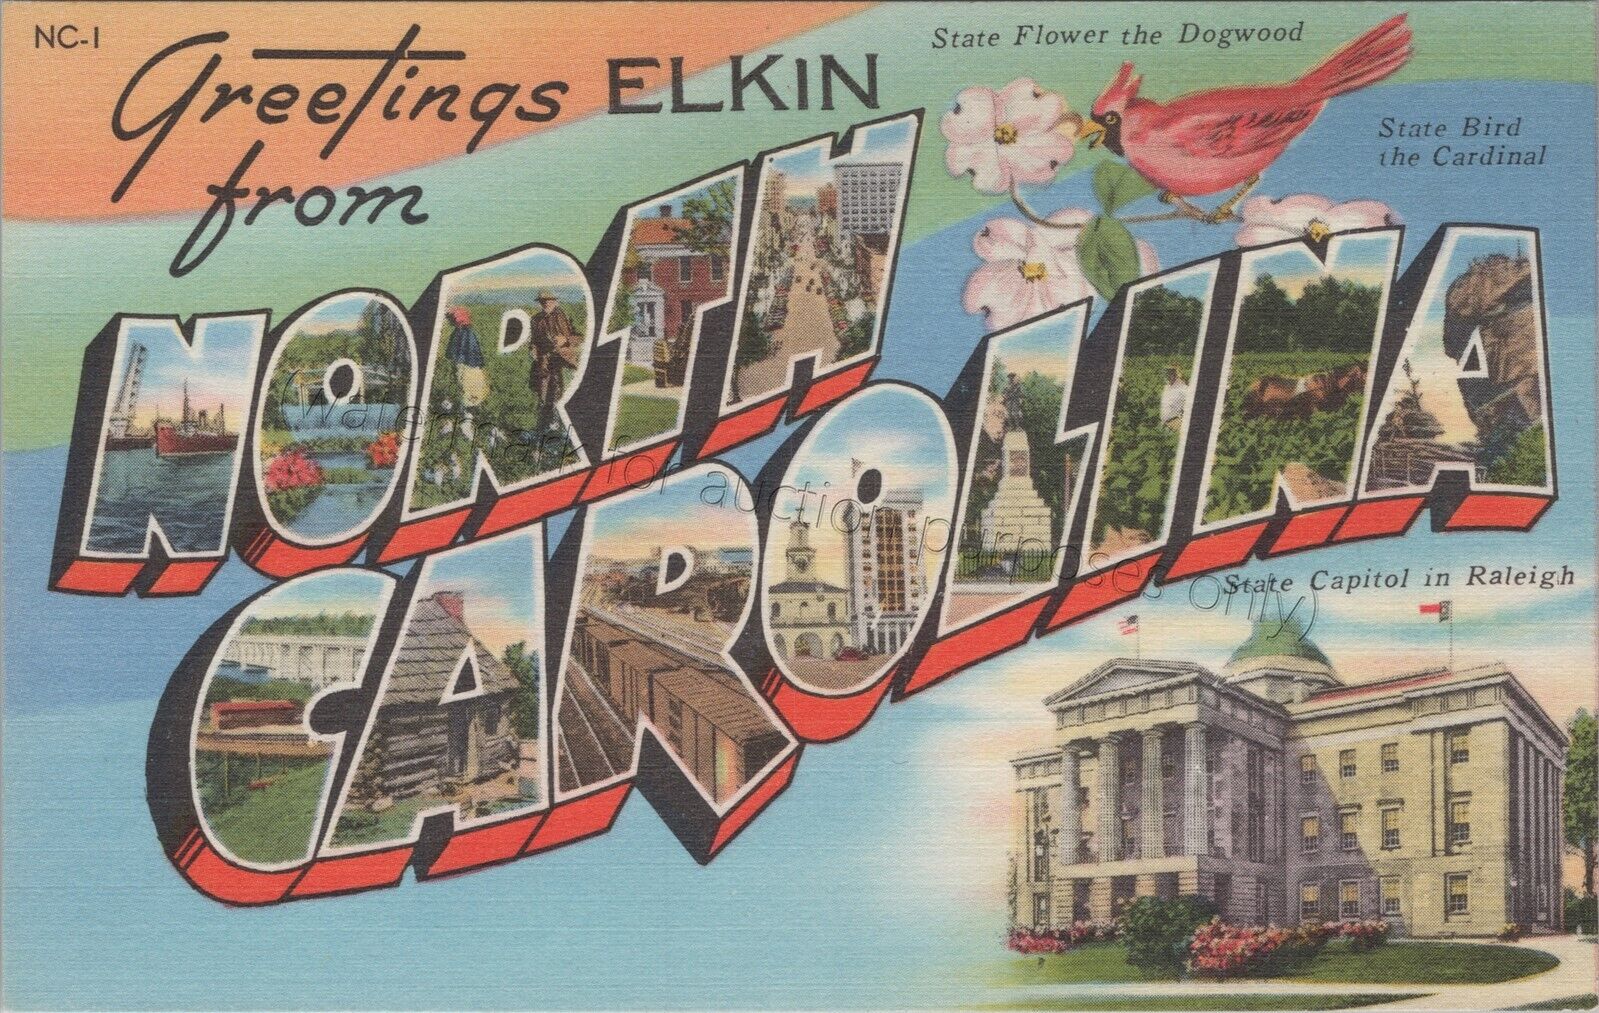 Elkin, NC: Large Letter *unused* vintage North Carolina linen Greetings postcard